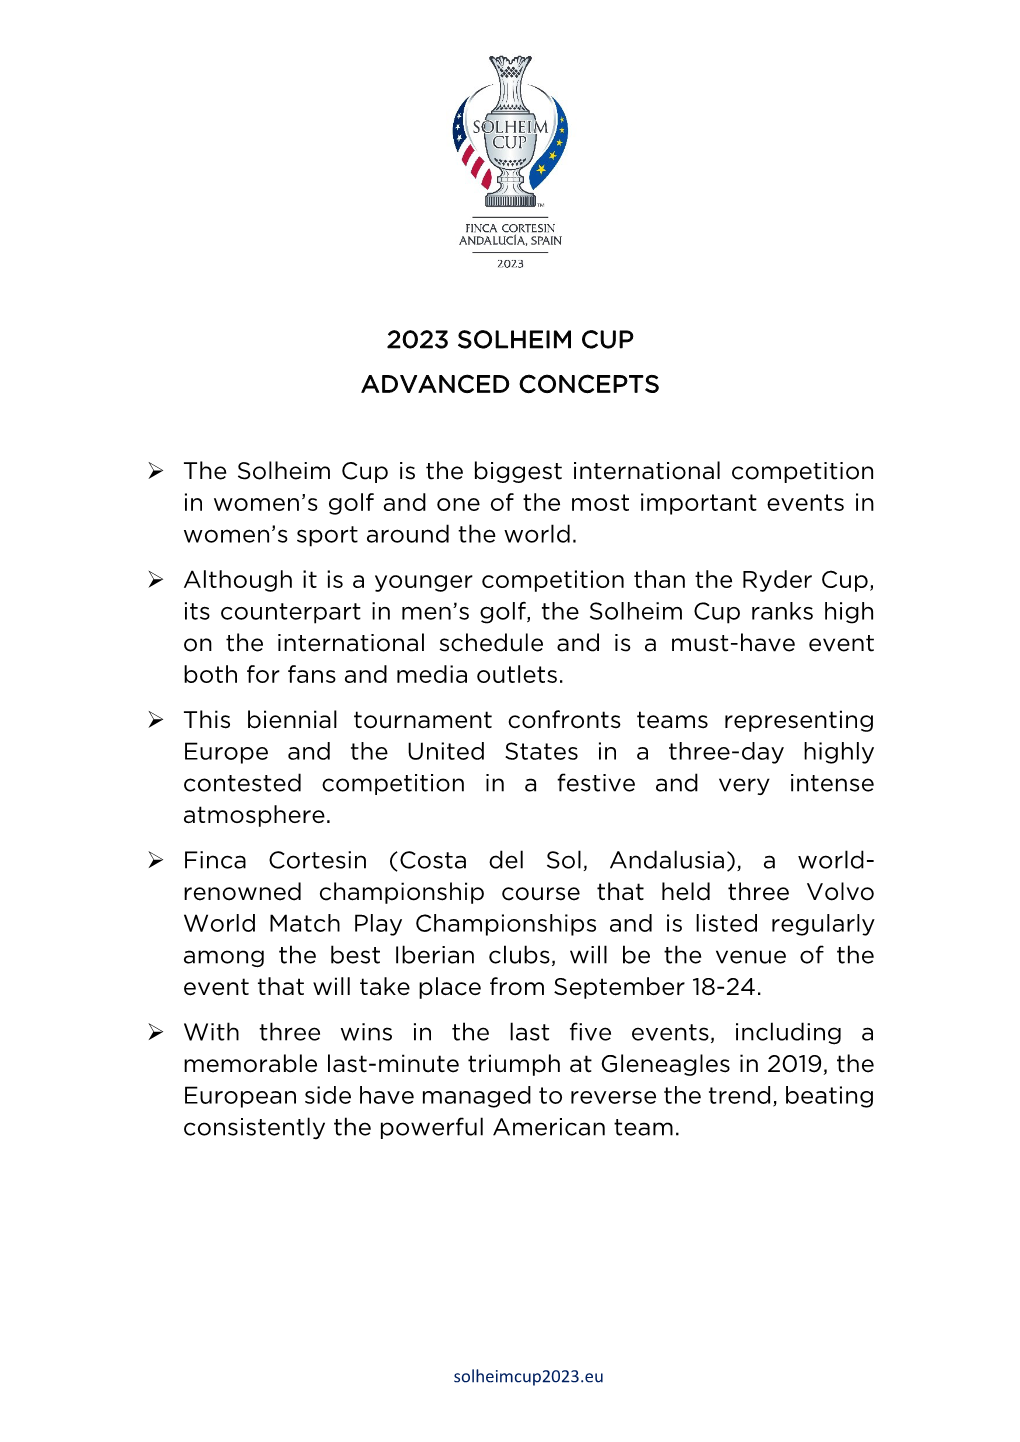 2023 Solheim Cup Advanced Concepts